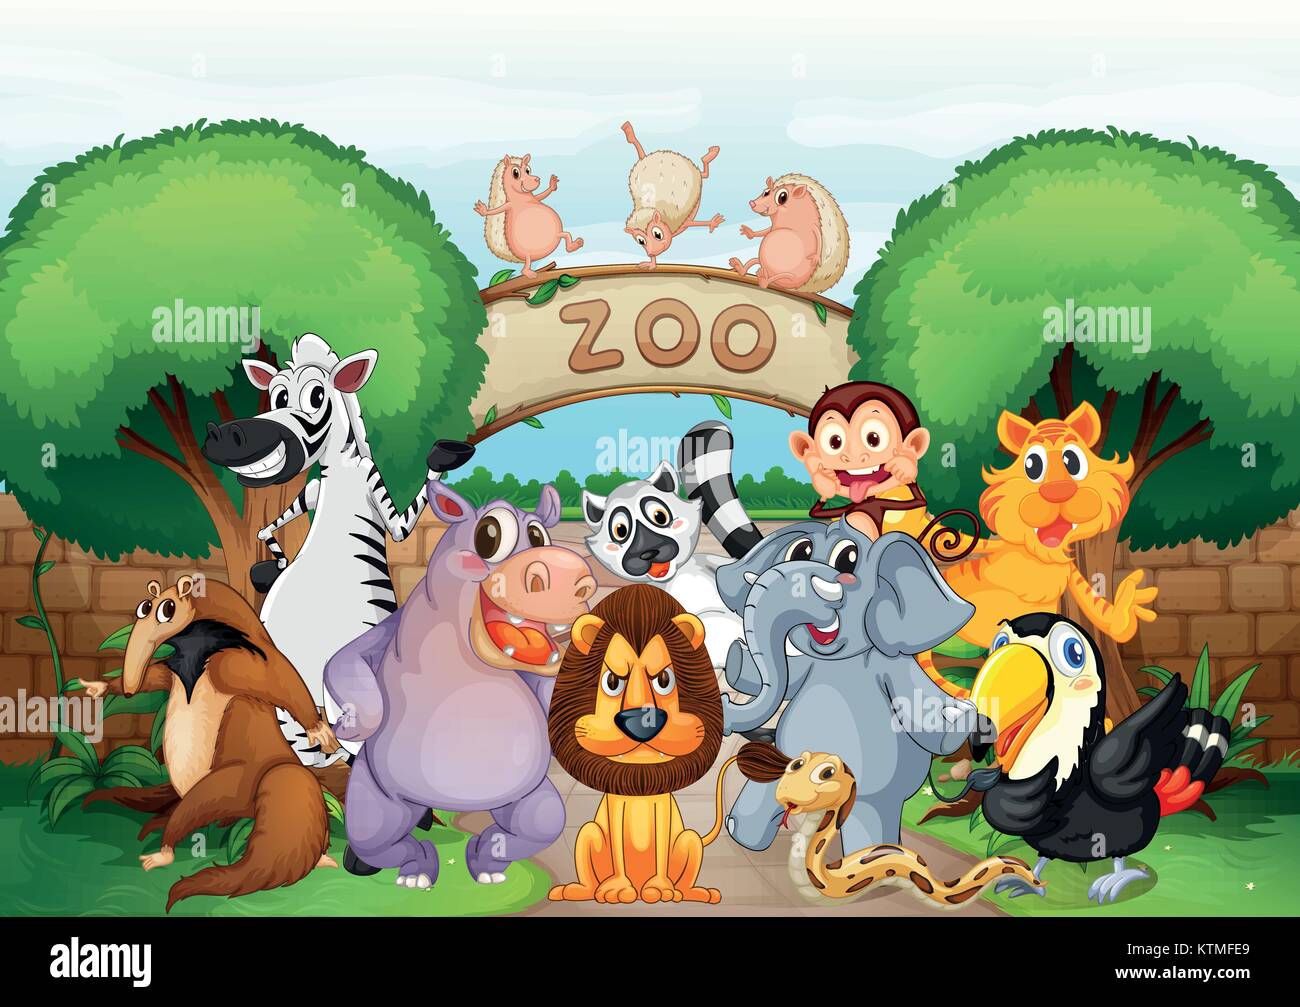 Illustrazione Di Zoo E Animali In Una Natura Bellissima Immagine E Vettoriale Alamy